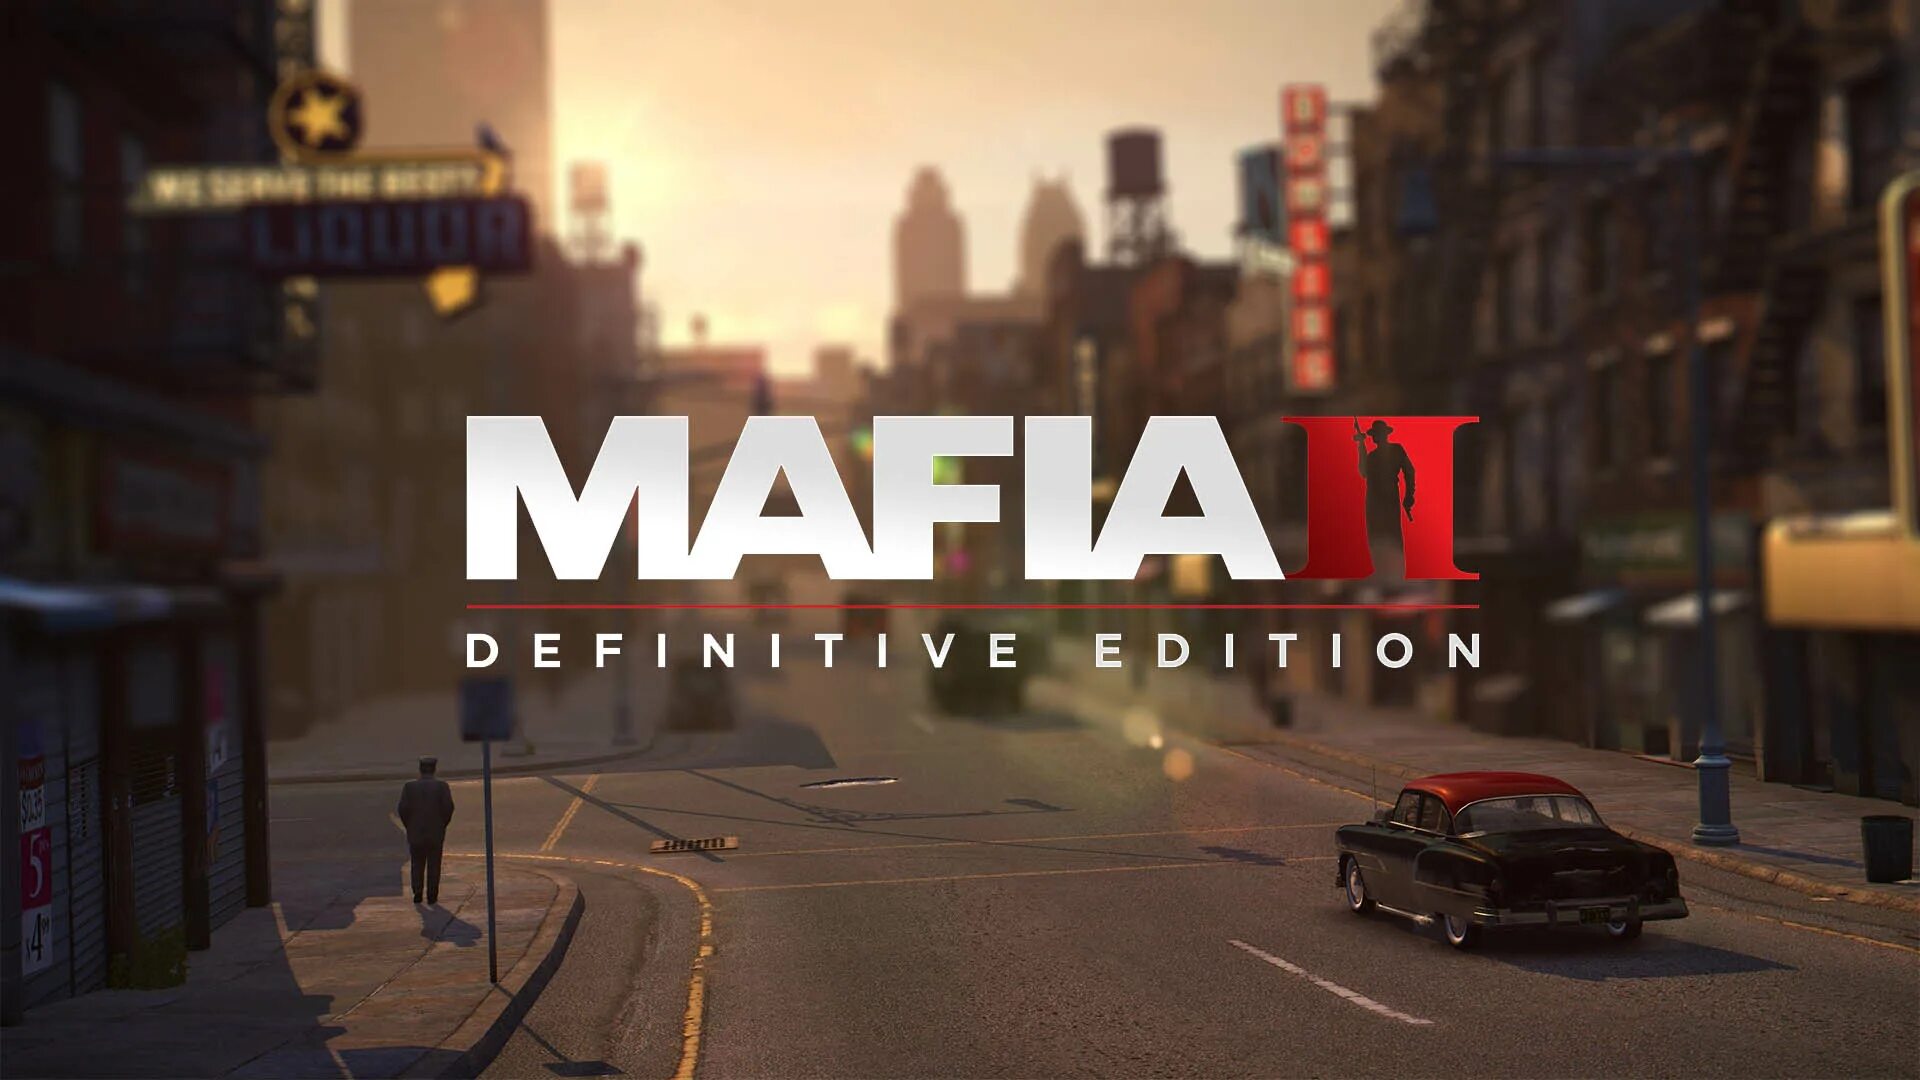 Mafia 2 Definitive Edition. Мафия 2 Дефинитив эдишн. Мафия 2 игра Definitive Edition. Мафия 2 дефенэти этишен.